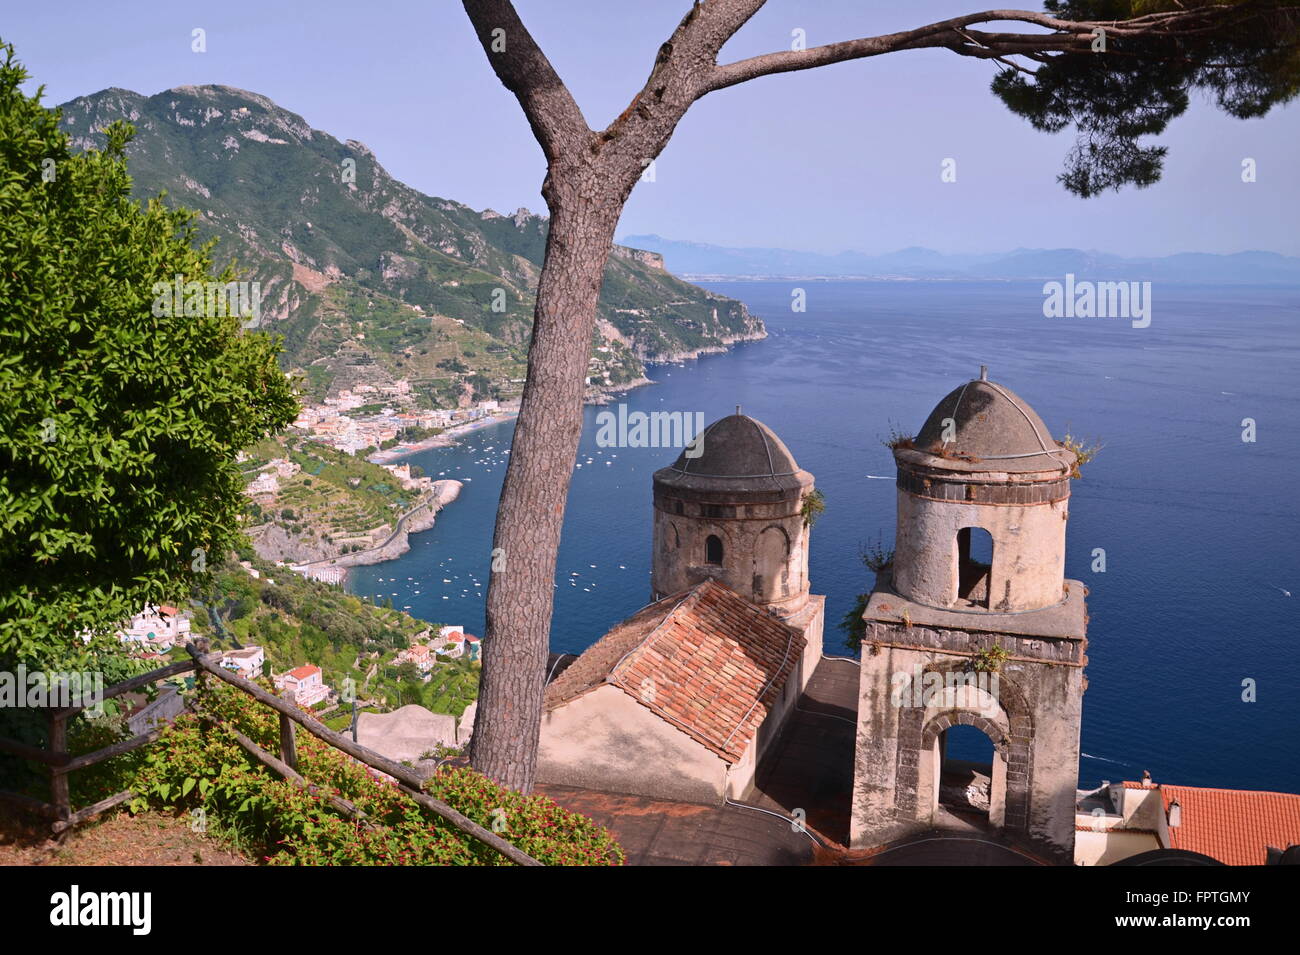 El pintoresco paisaje de la famosa costa de Amalfi, vista desde la Villa Rufolo de Ravello, Italia Foto de stock